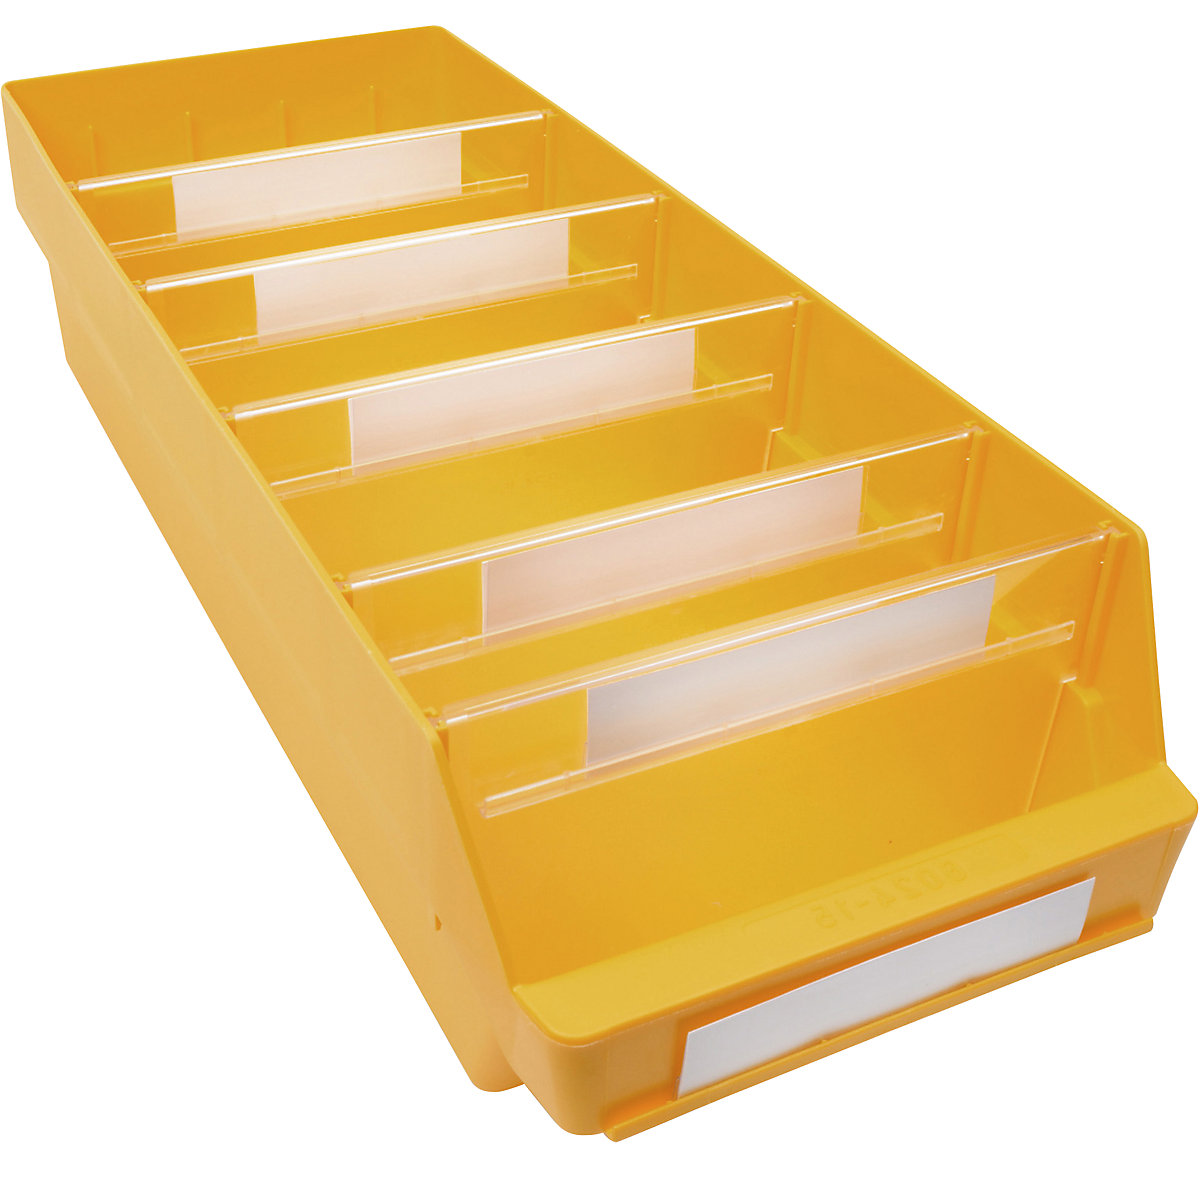 Kutija za regale od polipropilena otpornog na udarce – STEMO, u žutoj boji, DxŠxV 600 x 240 x 150 mm, pak. 10 kom.-14